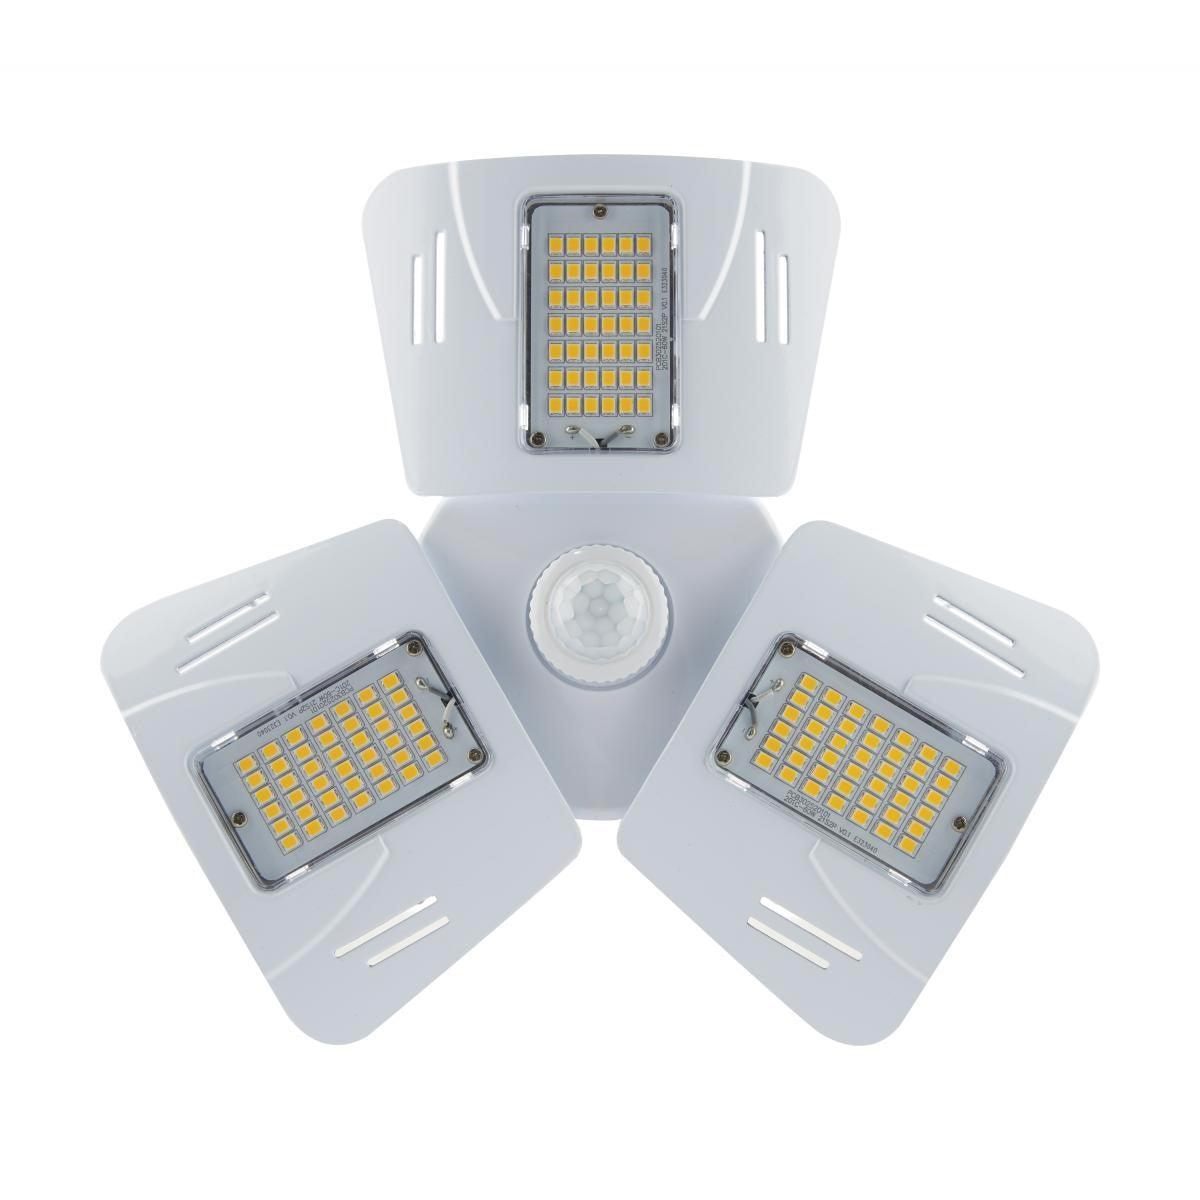 LED Garage Light Bulb with Motion Sensor, 5,880 lumens, 3 Adjustable Panels, 4000K Cool White, E26 Base - Bees Lighting